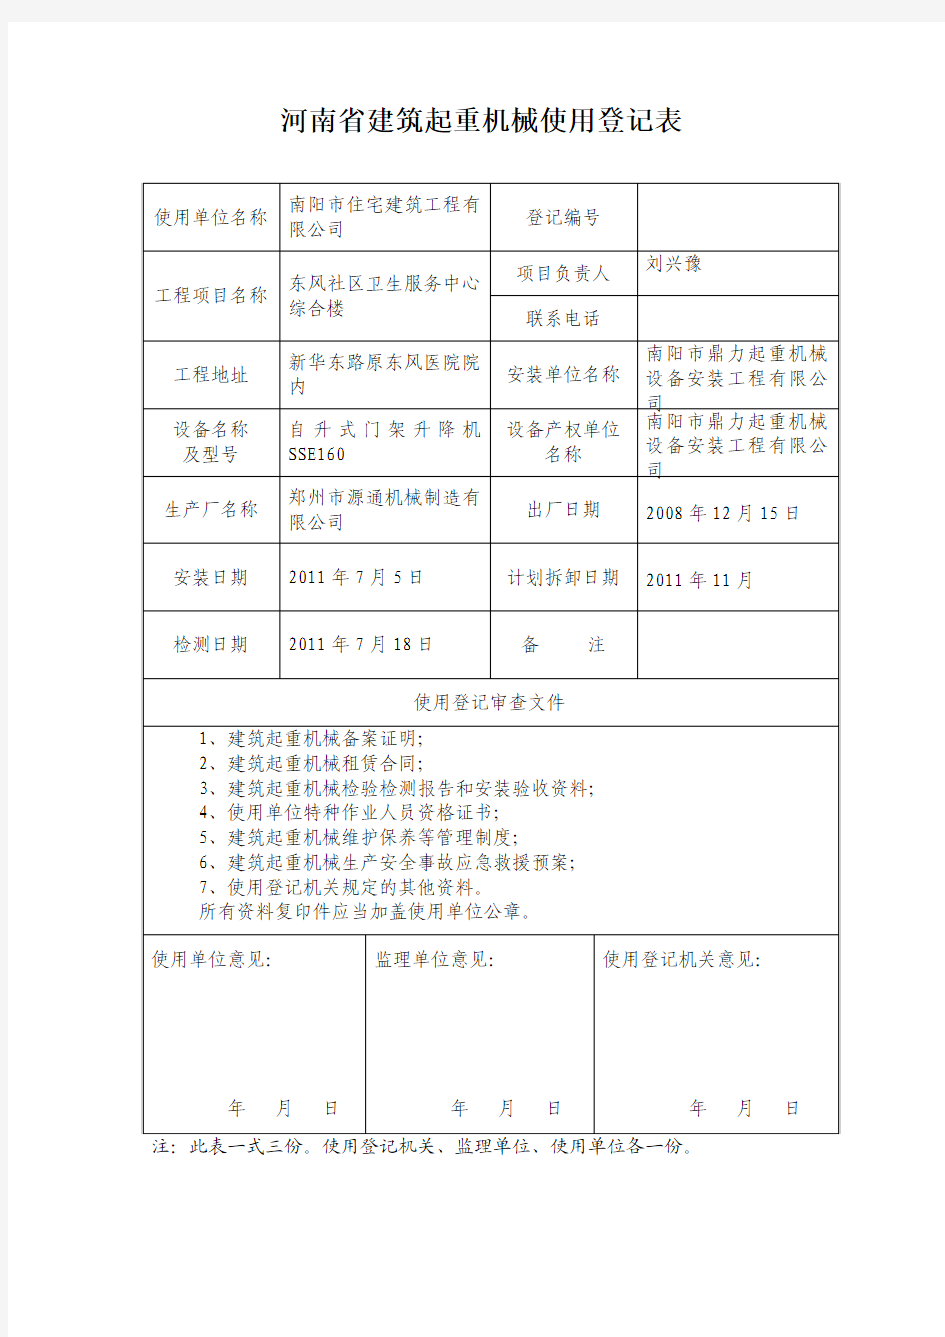 河南省建筑起重机械使用登记表